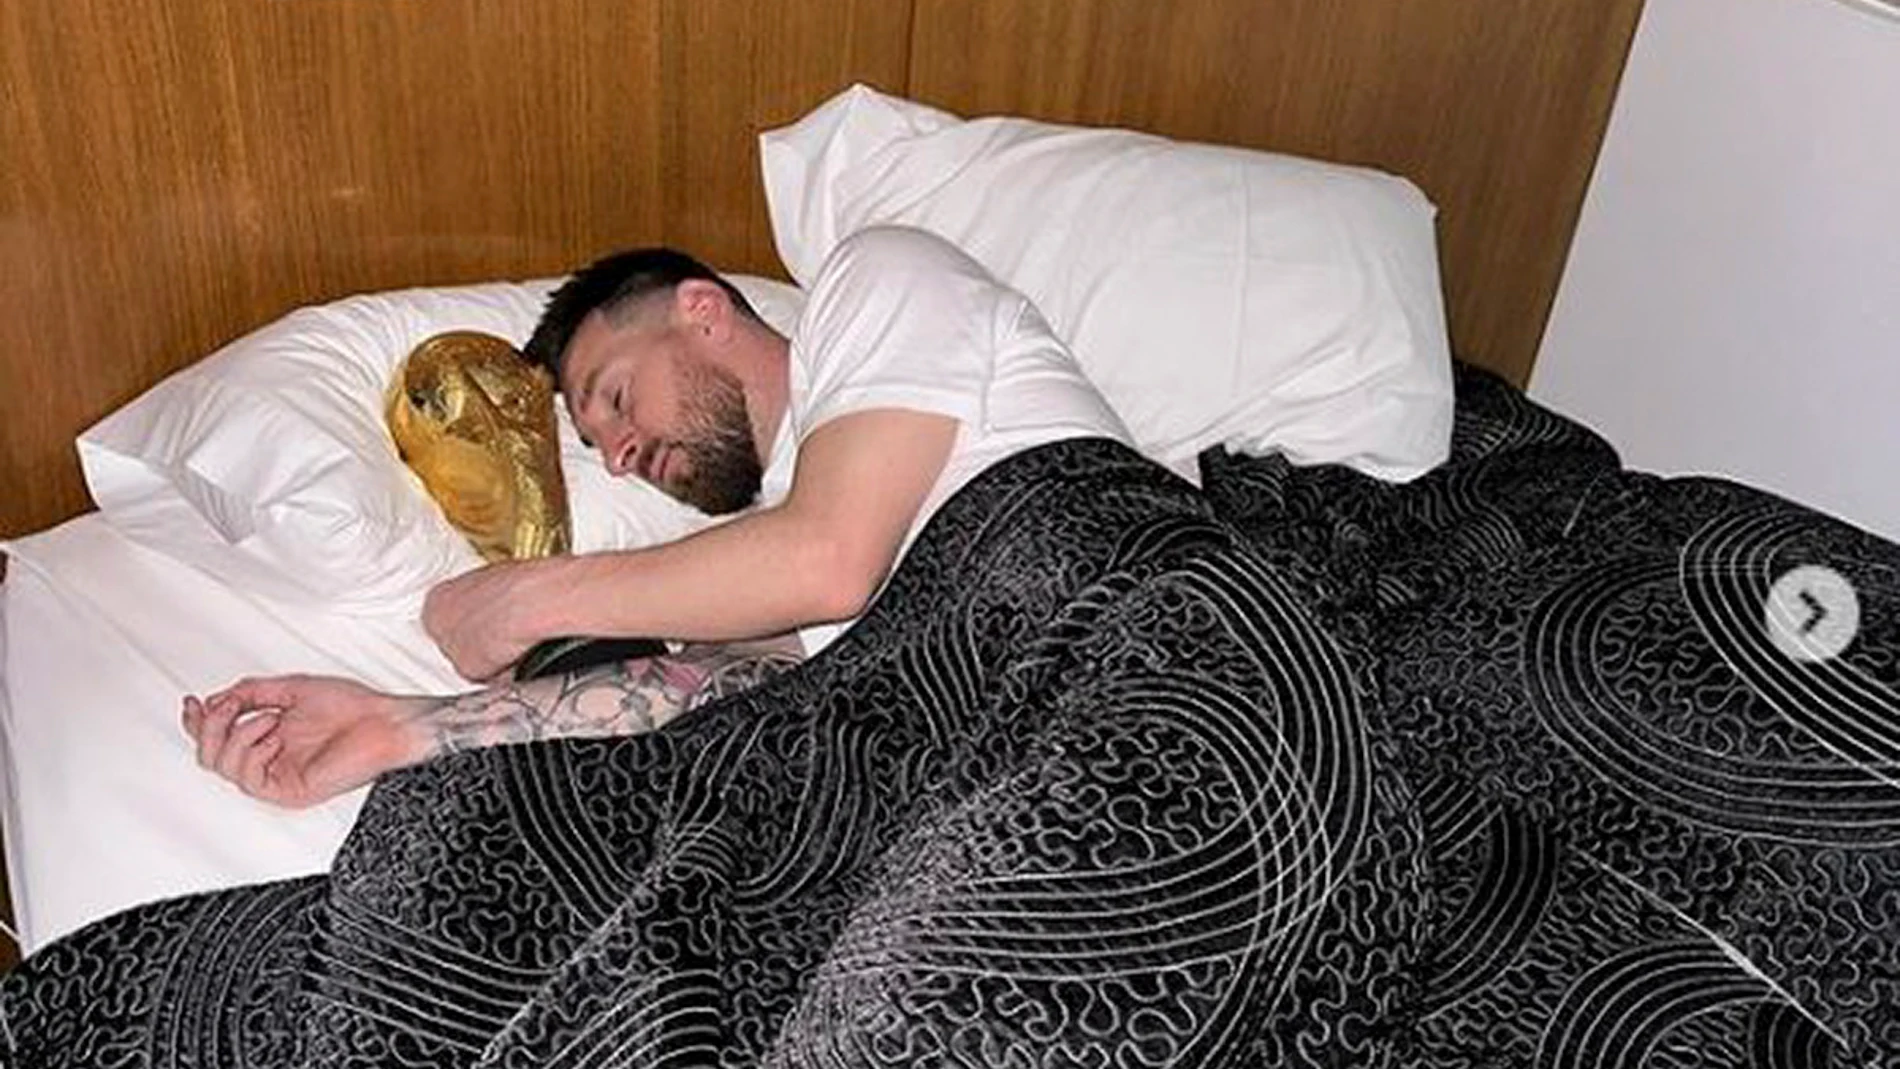 Fotografía publicada en el perfil de Instagram de Lionel Messi durmiendo con la Copa del Mundo del Mundial de Qatar